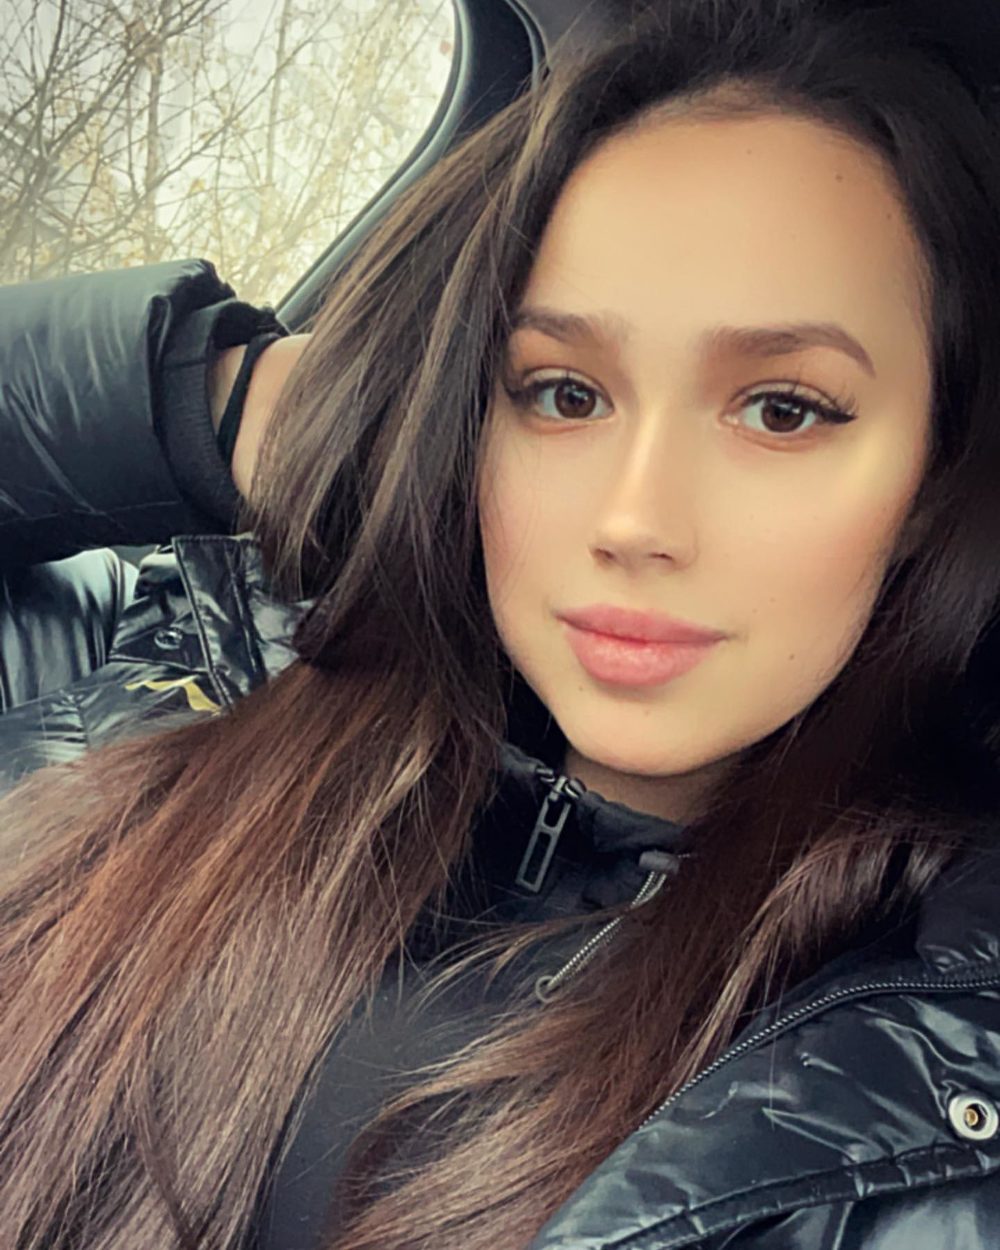 Алина Загитова сделала новую публикацию в Instagram